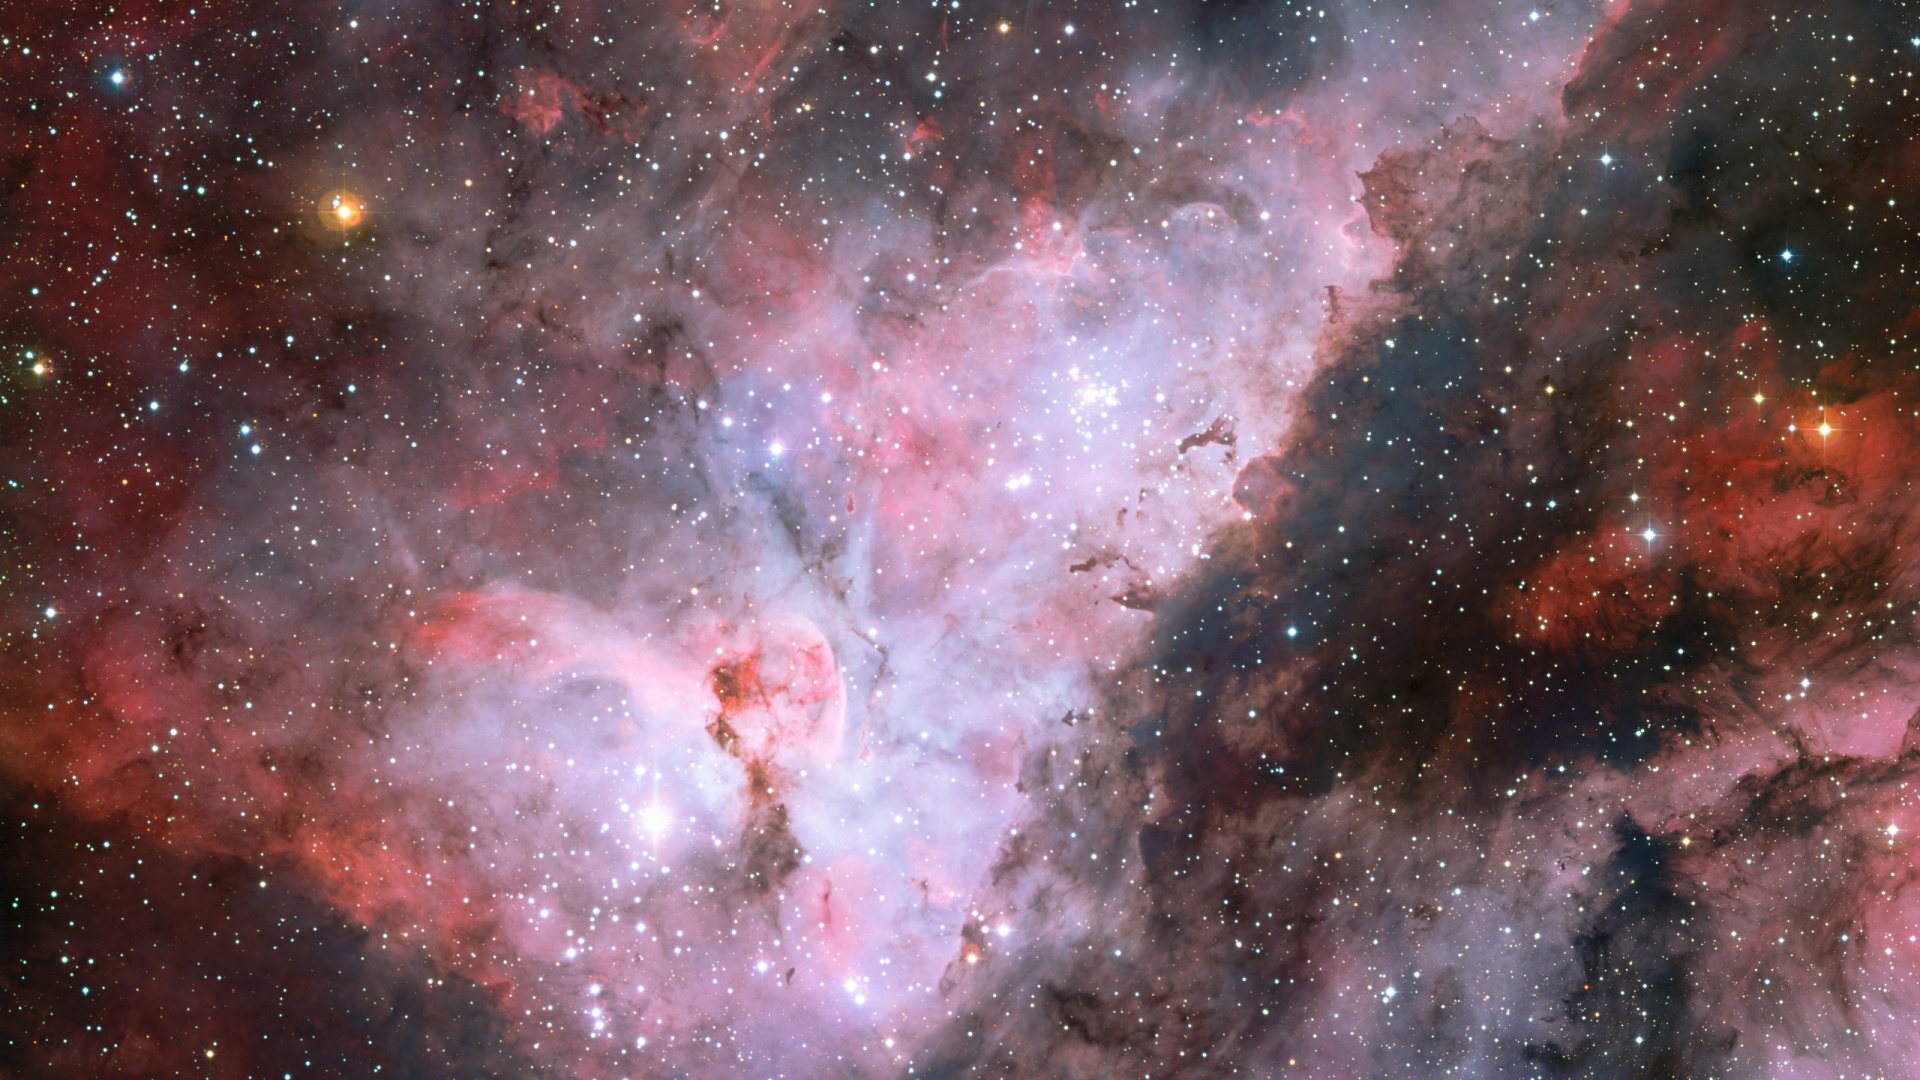 Carina星云, 明星, 哈勃太空望远镜, 天文学对象, 外层空间 壁纸 1920x1080 允许